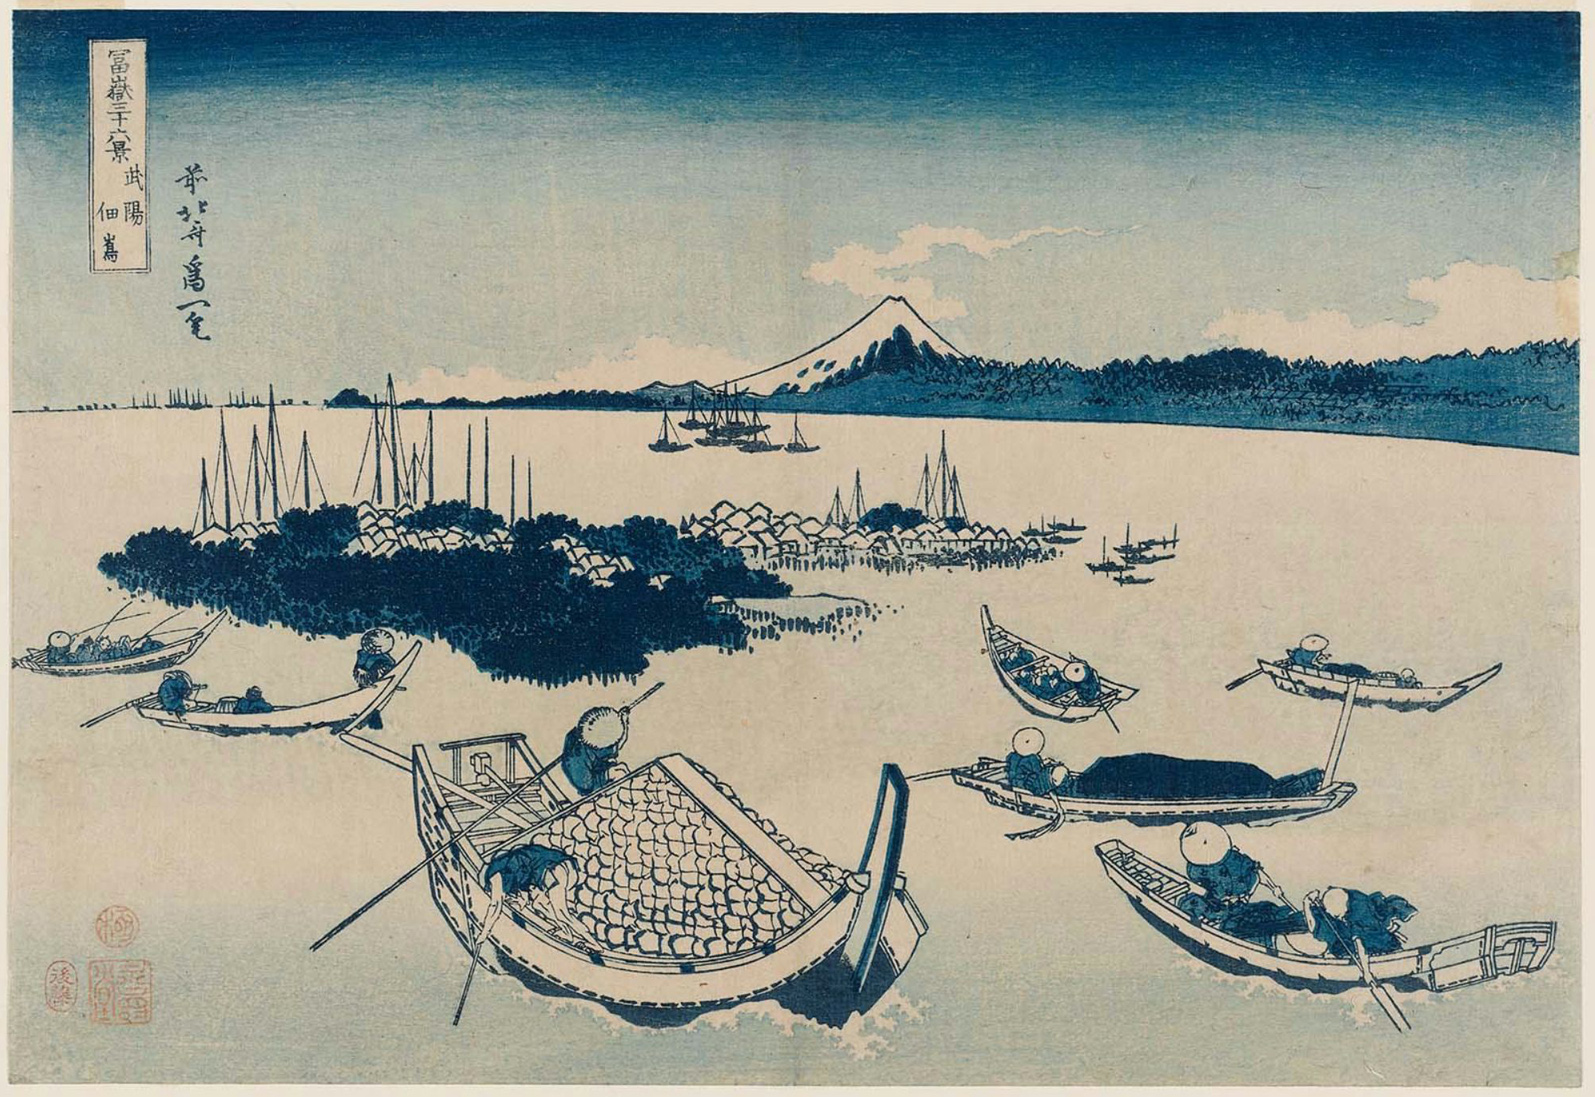 Hokusai - #12 Tsukuda-jima in Musashi Province - 36 Views of Mt Fuji